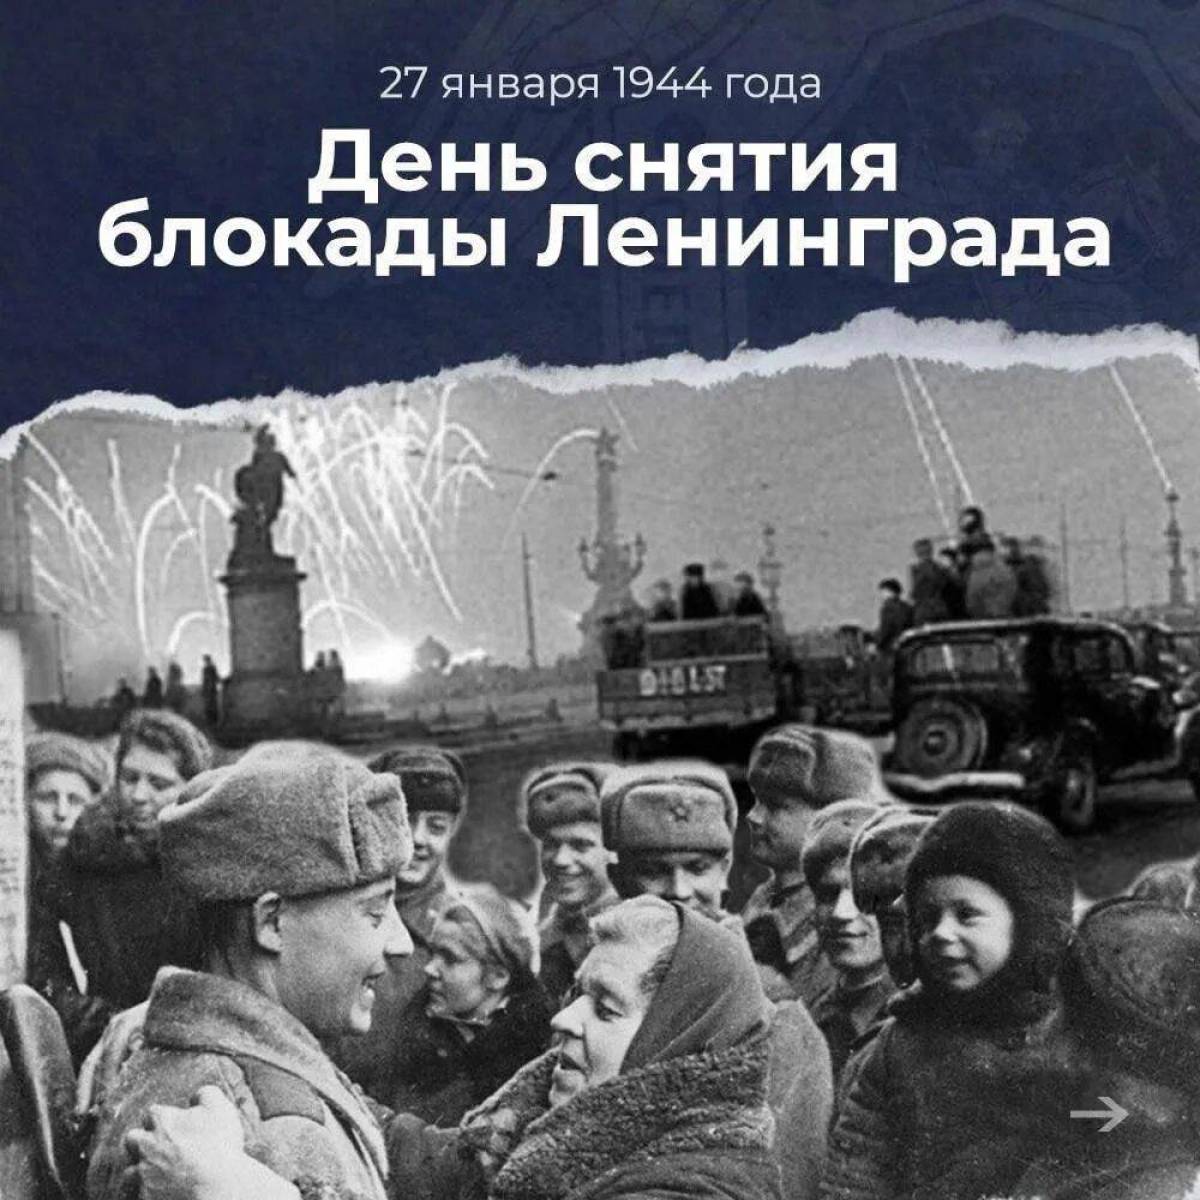 Снятие блокады ленинграда #24